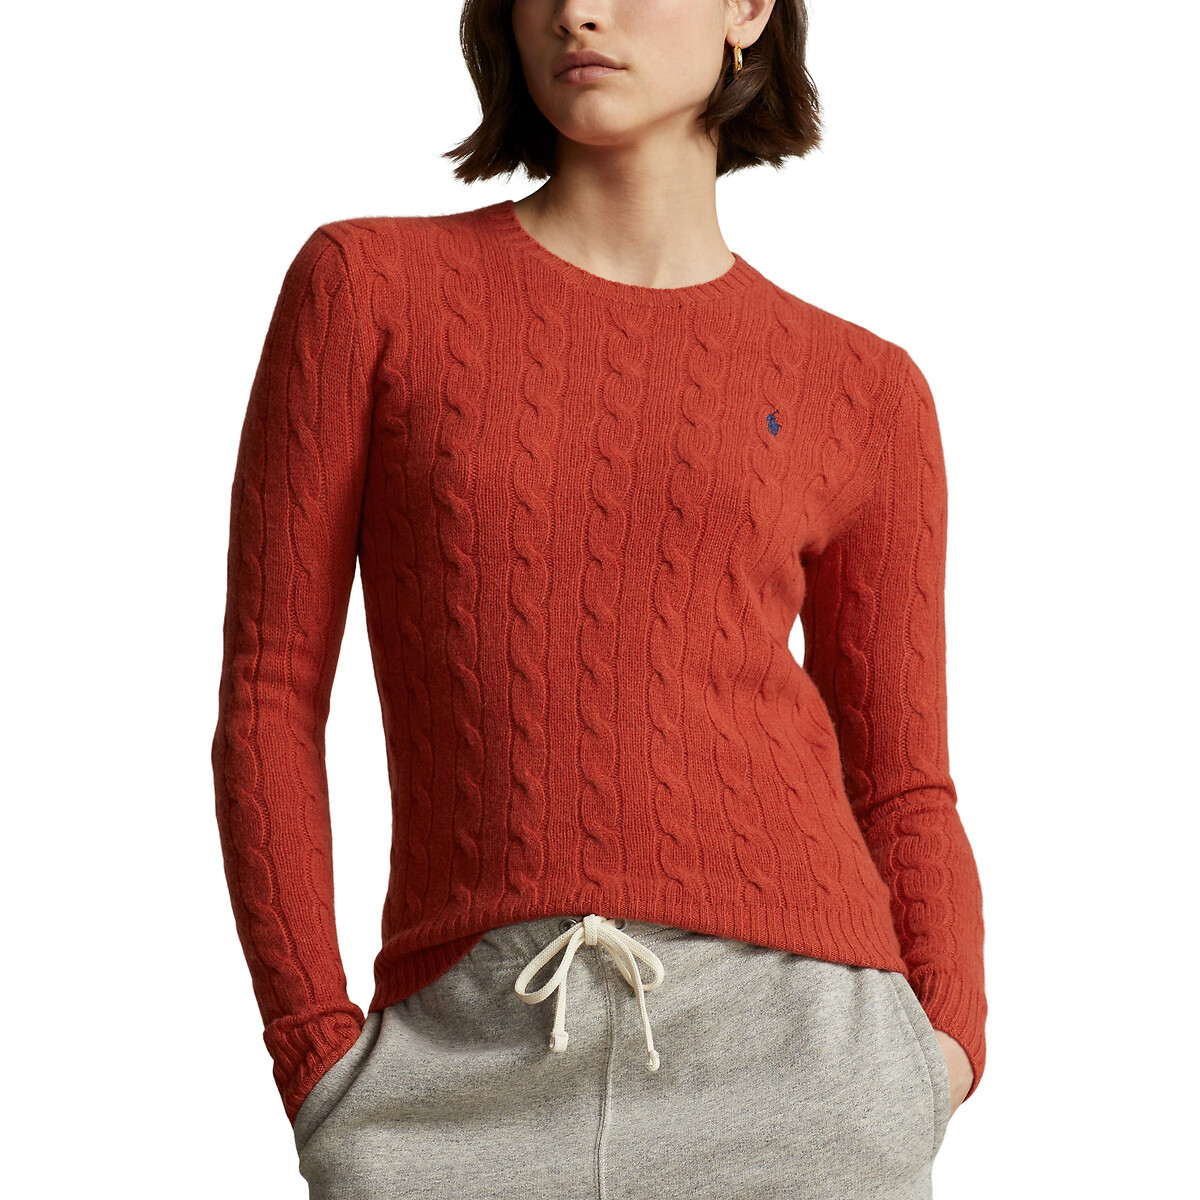 Пуловер с круглым вырезом из витого трикотаж JULIANNA L красный пуловер с витым узором m синий